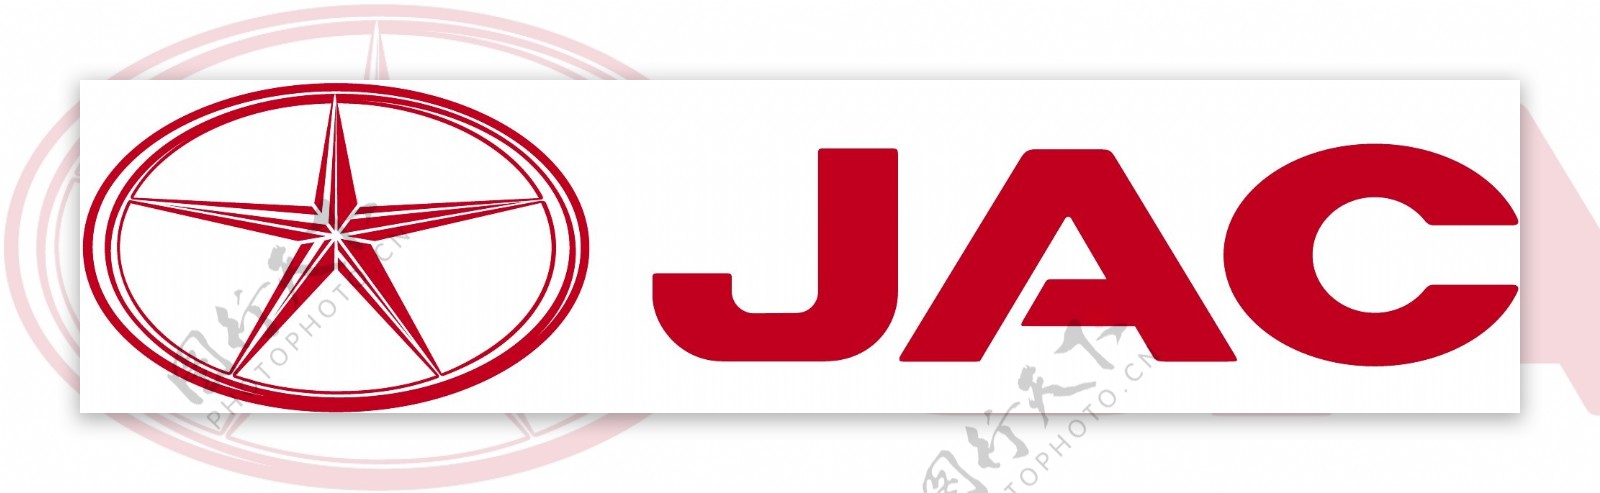 江淮logo图片